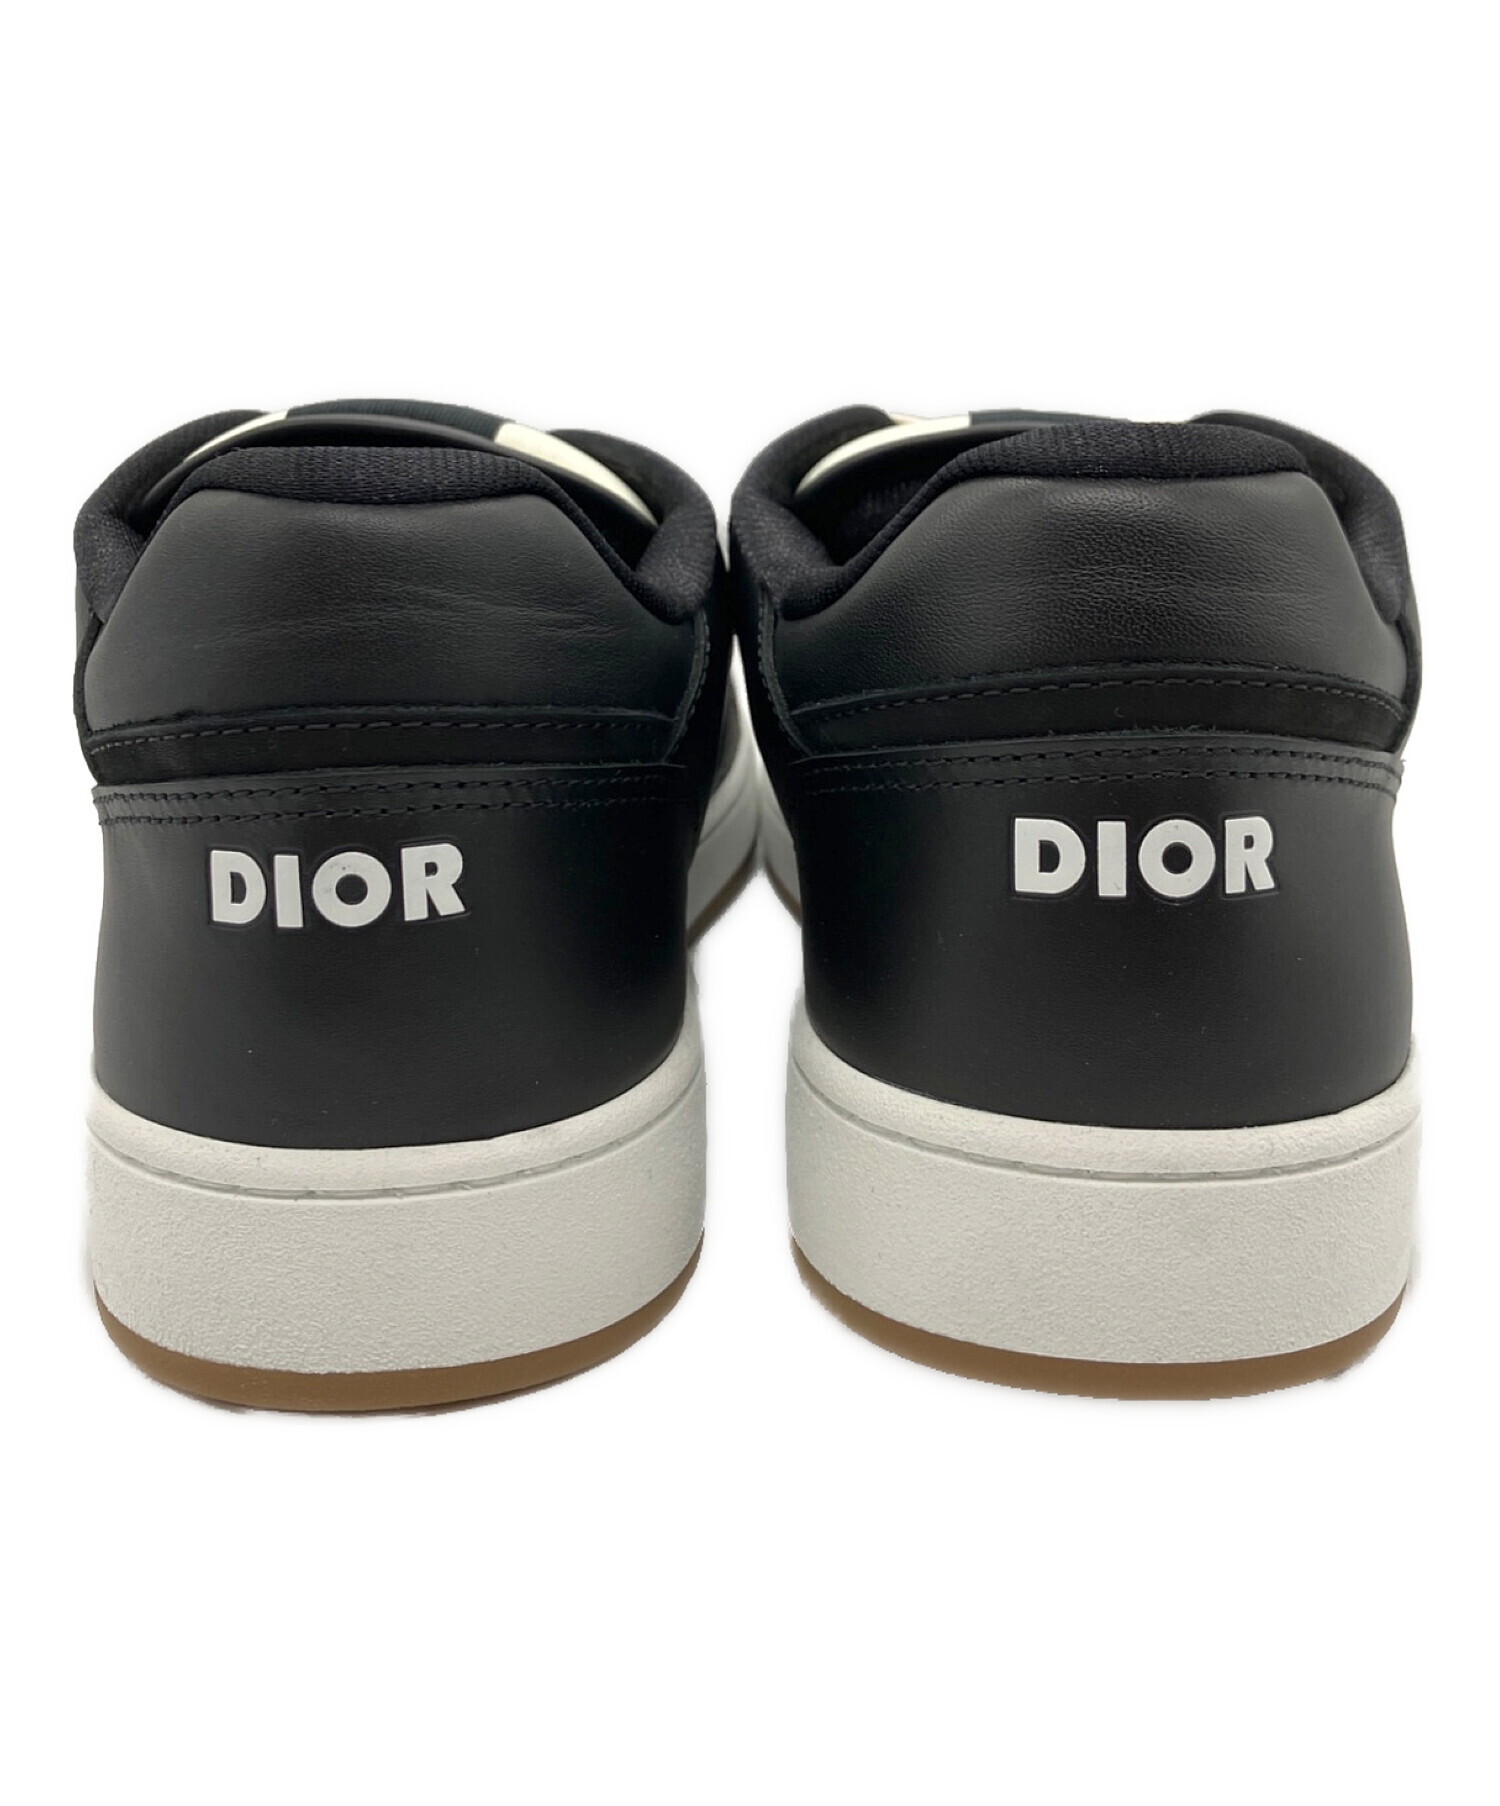 Dior (ディオール) B27 ロートップスニーカー ブラック サイズ:43 未使用品